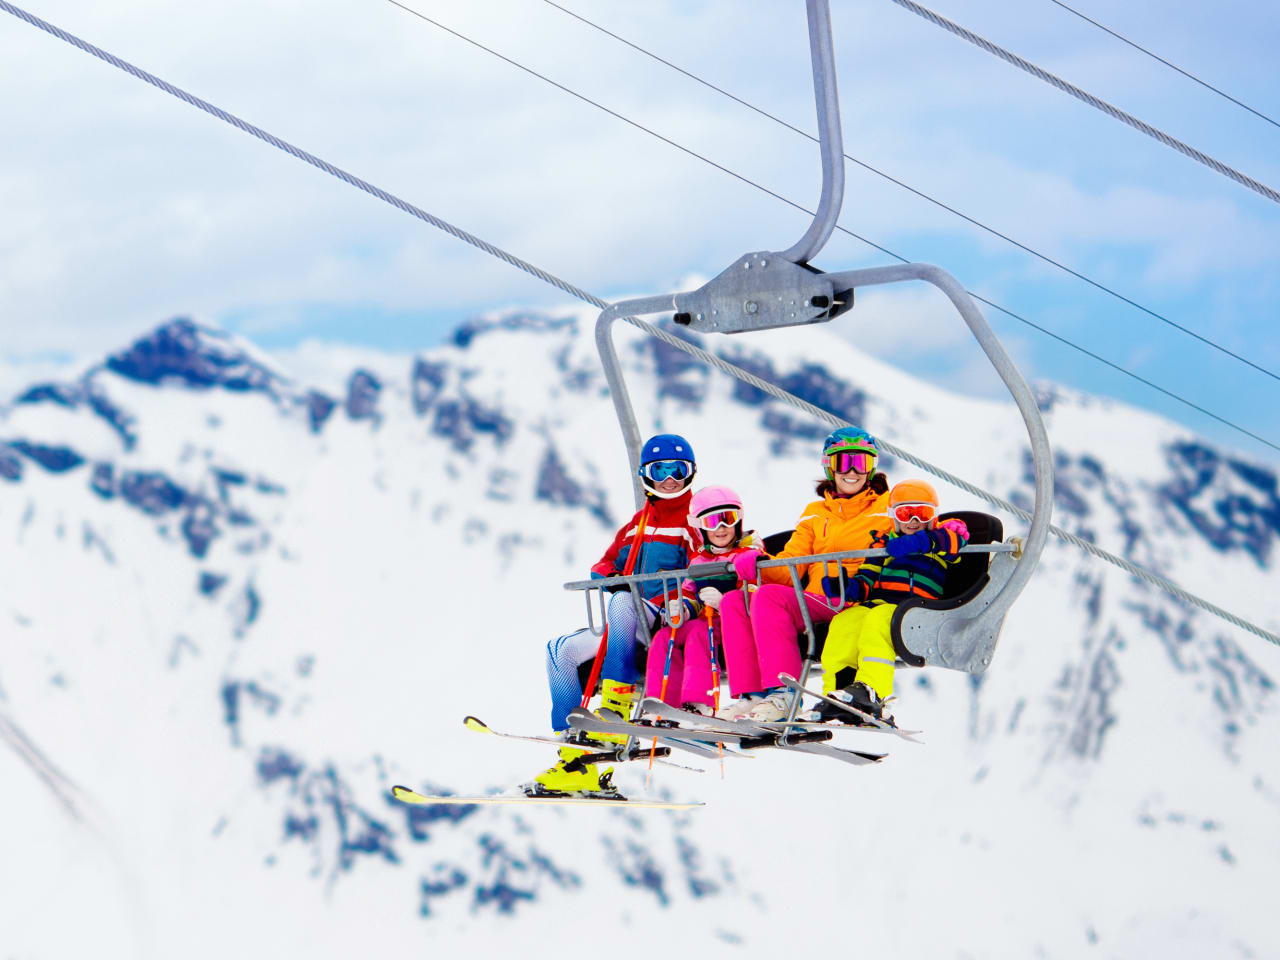 Familie im Skilift in den Bergen ©iStock.com/FamVeld